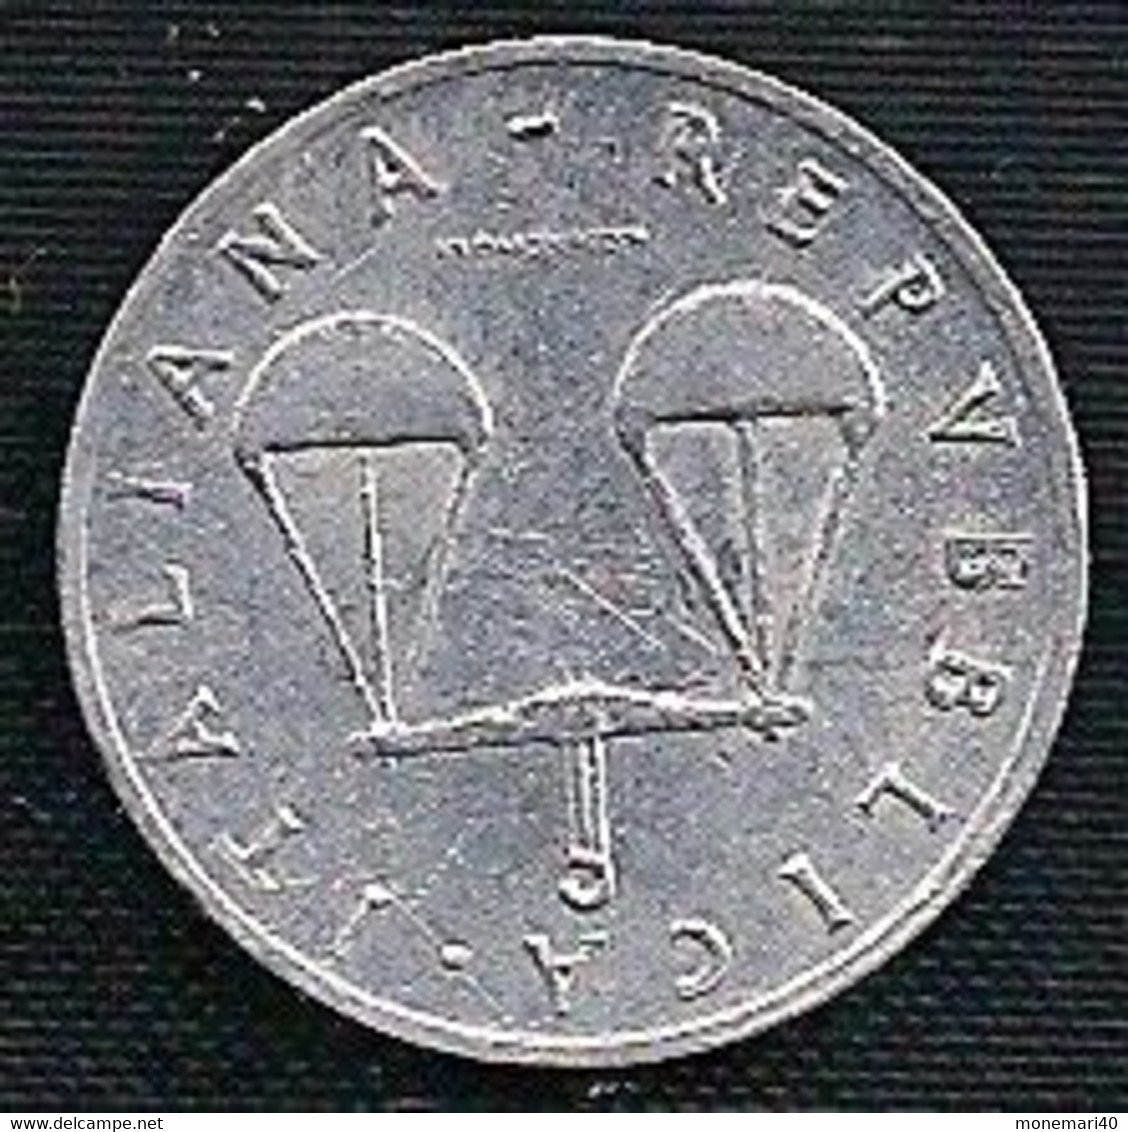 ITALIE 1 LIRE - 1954 - 1 Lira